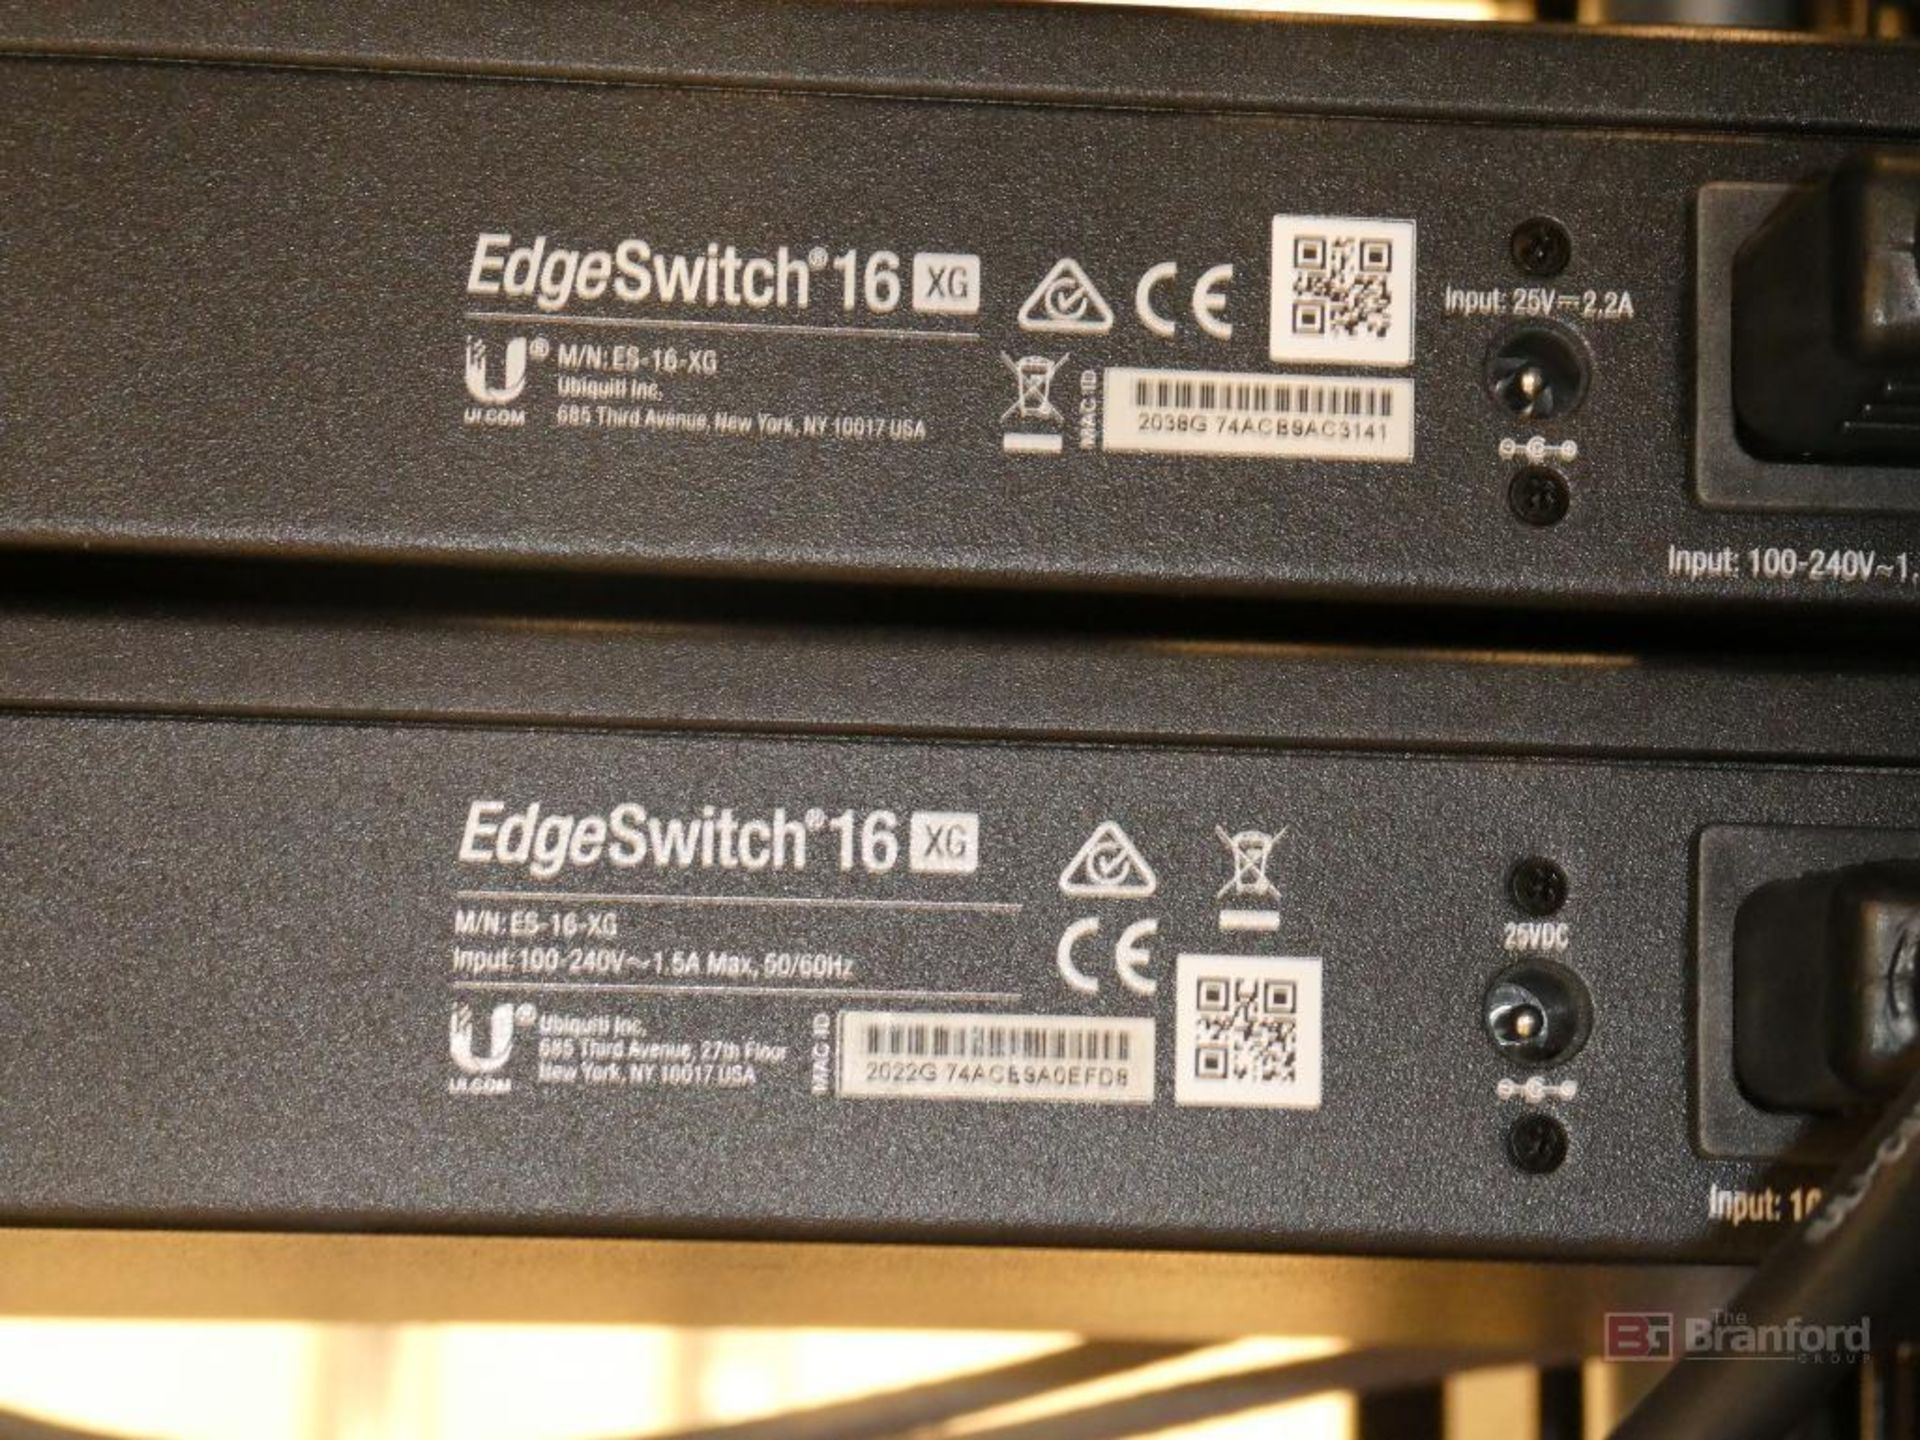 (2) Ubiquiti Inc Model ES-16-XG, EdgeSwitch 16XG 16-Port Aggregation Switches - Image 3 of 3